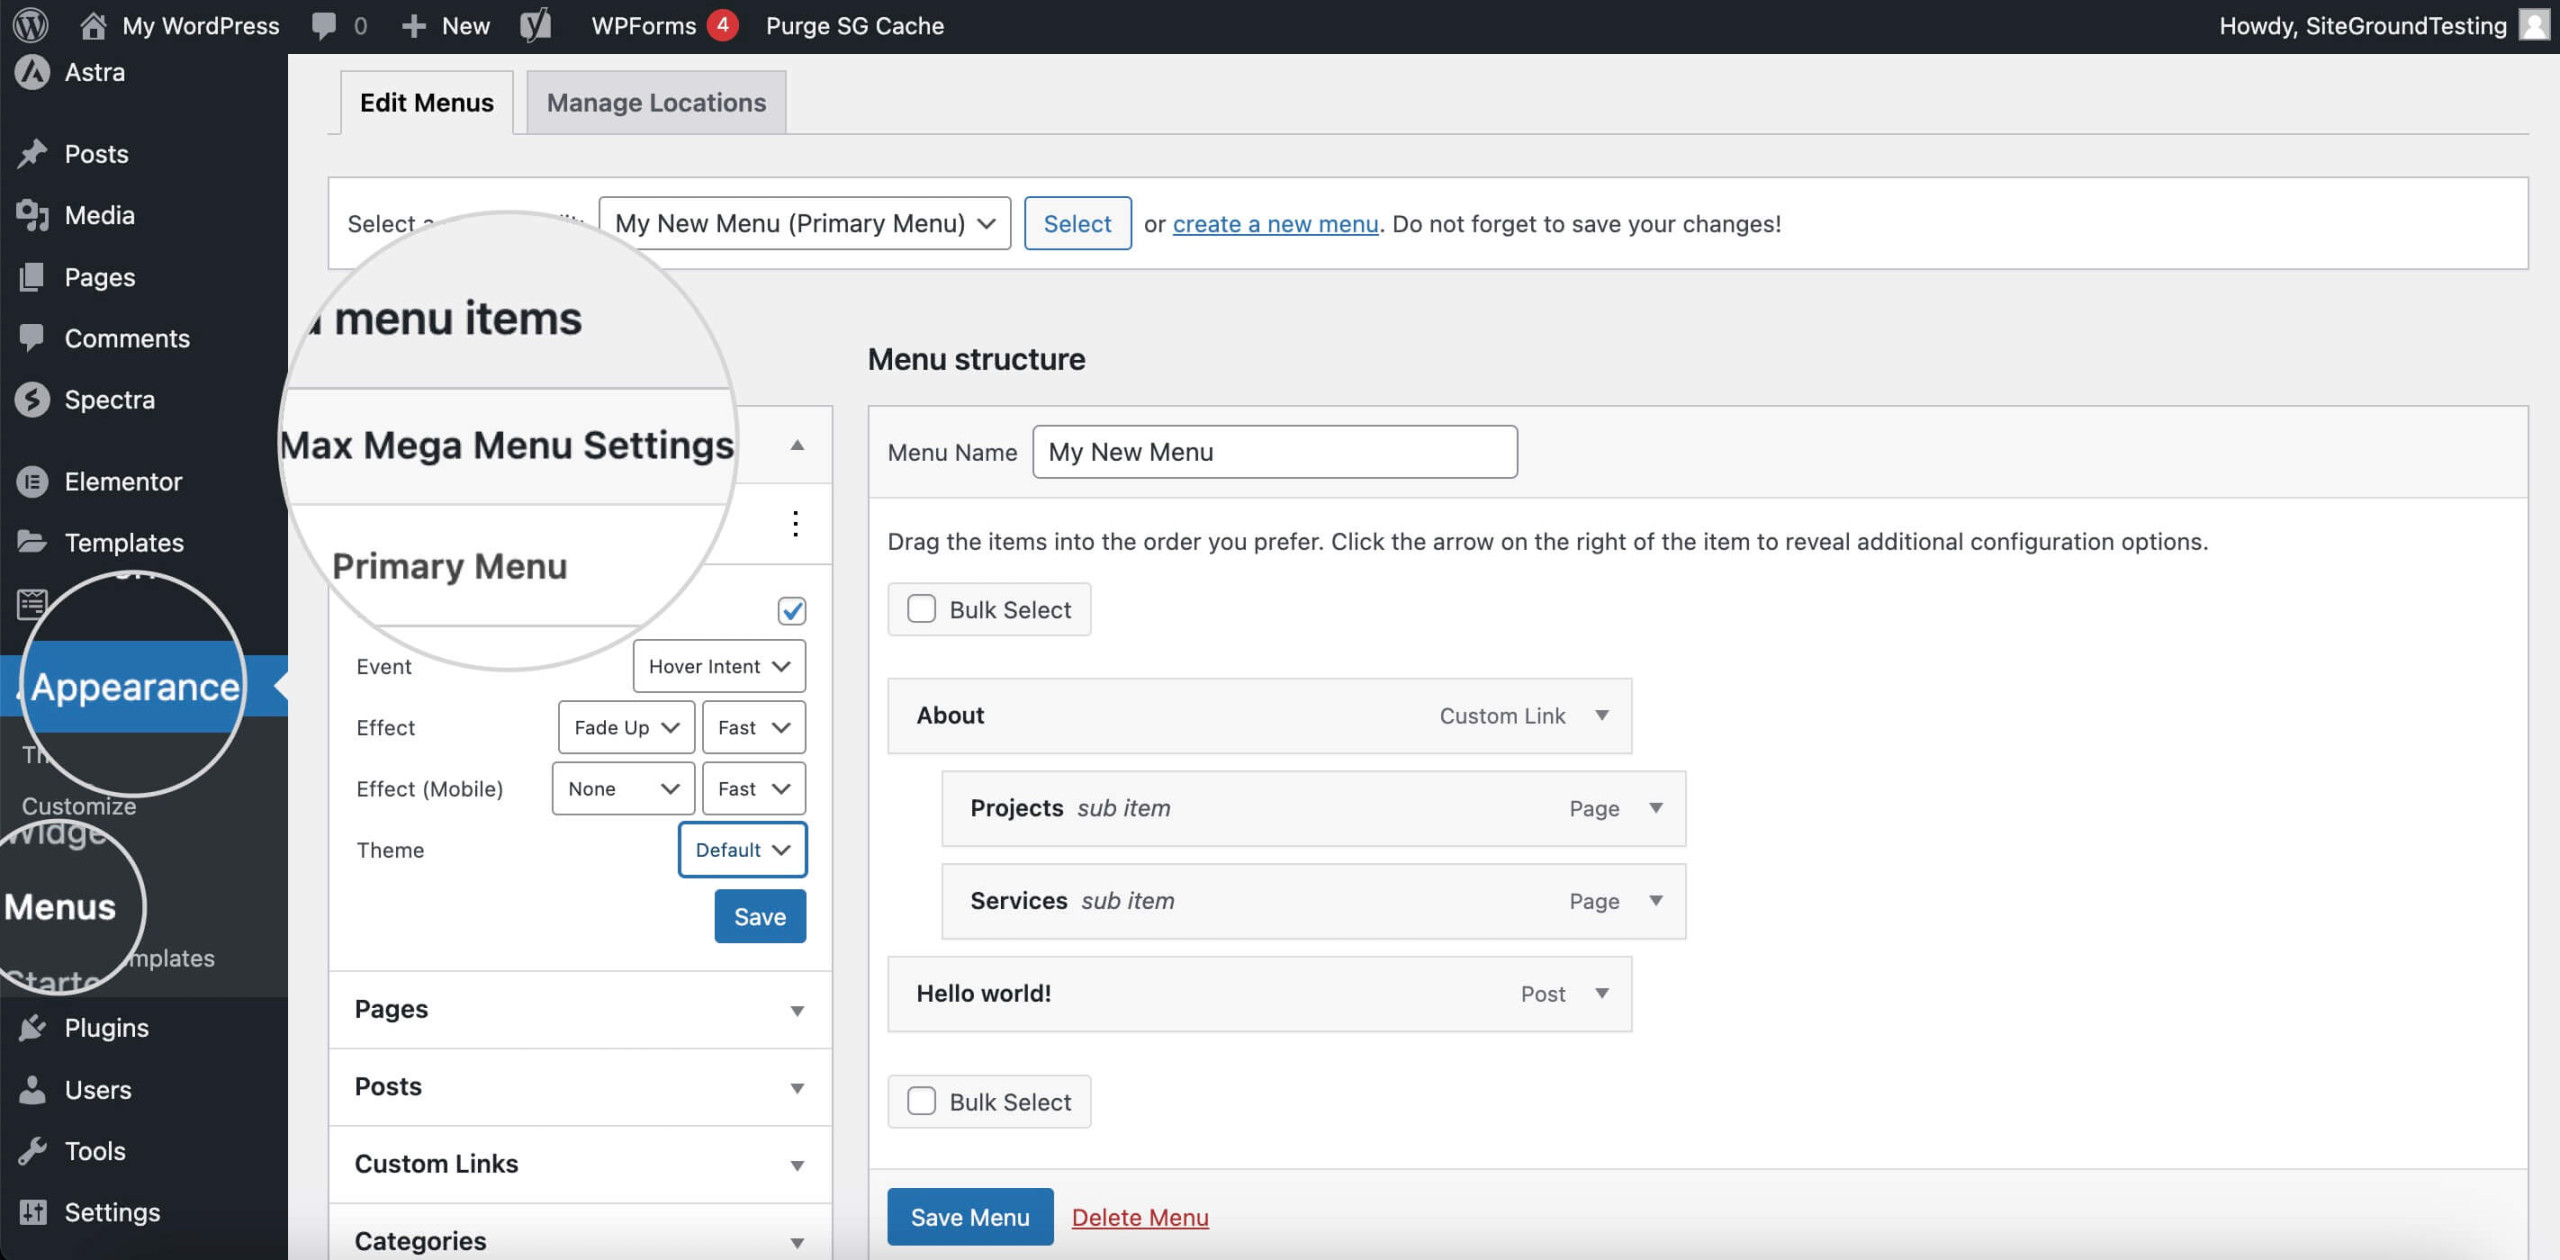 Screenshot showing the Max Mega Menu settings in the WordPress Menu Editor